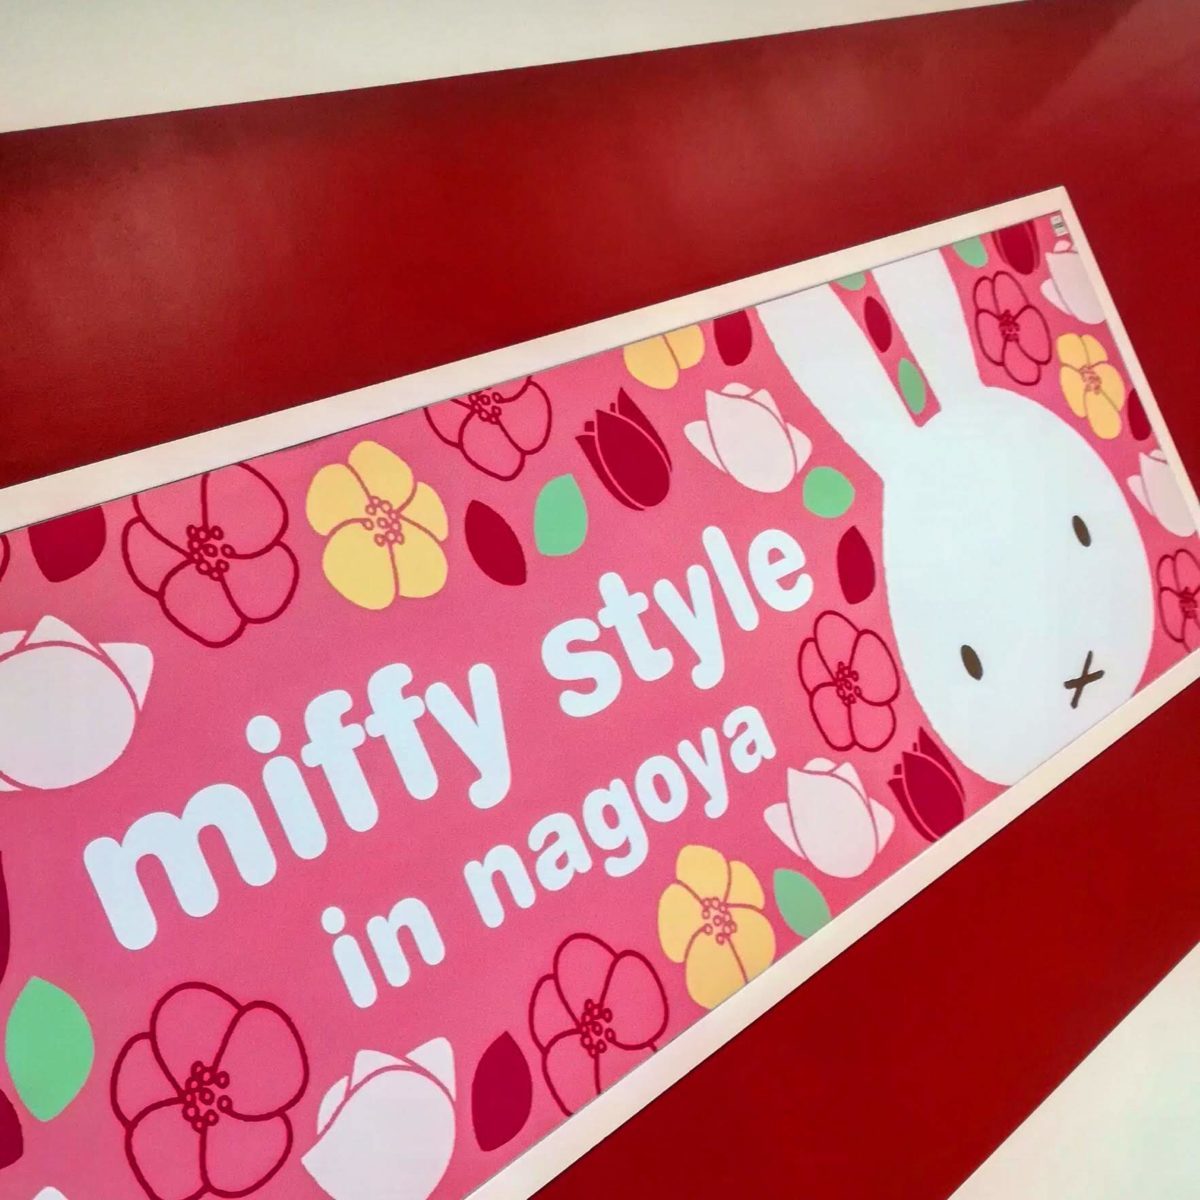 miffy style in nagoya